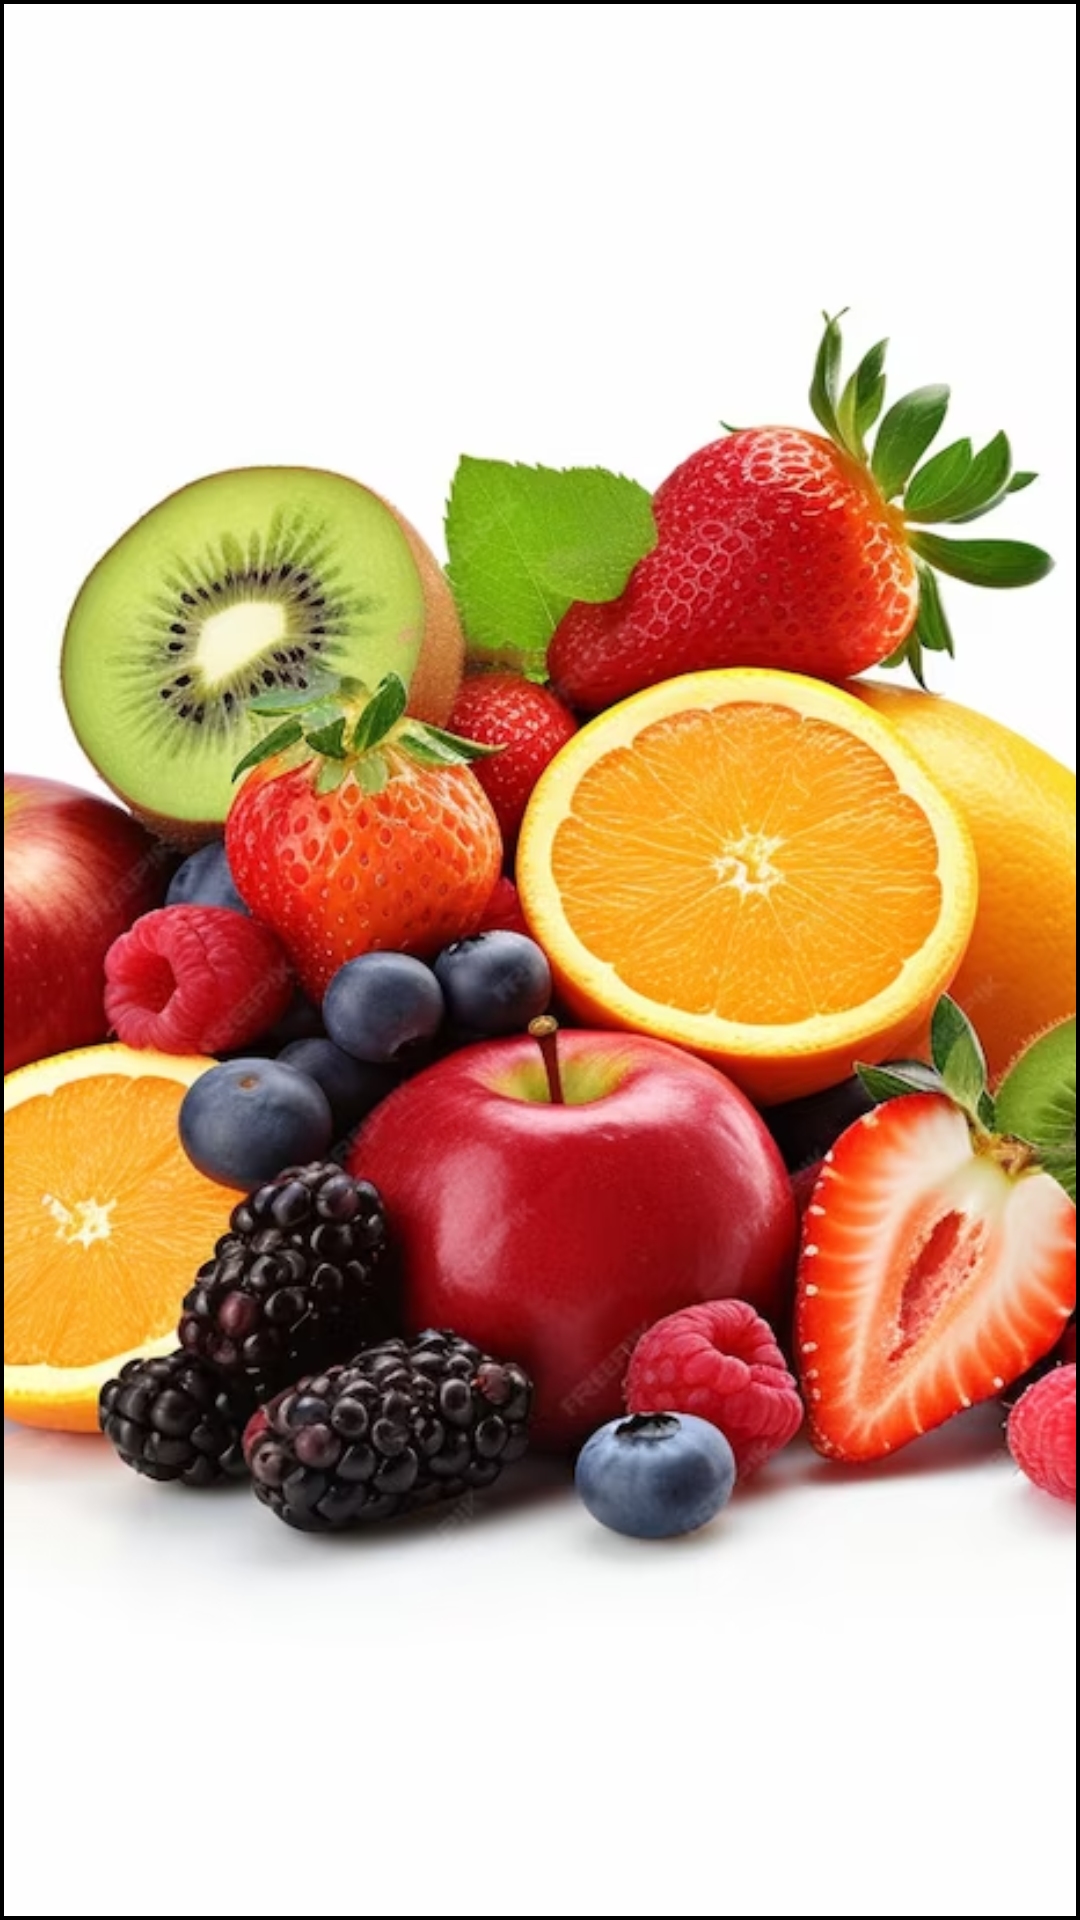 खाली पेट कौन सा फल सबसे अच्छा होता है?